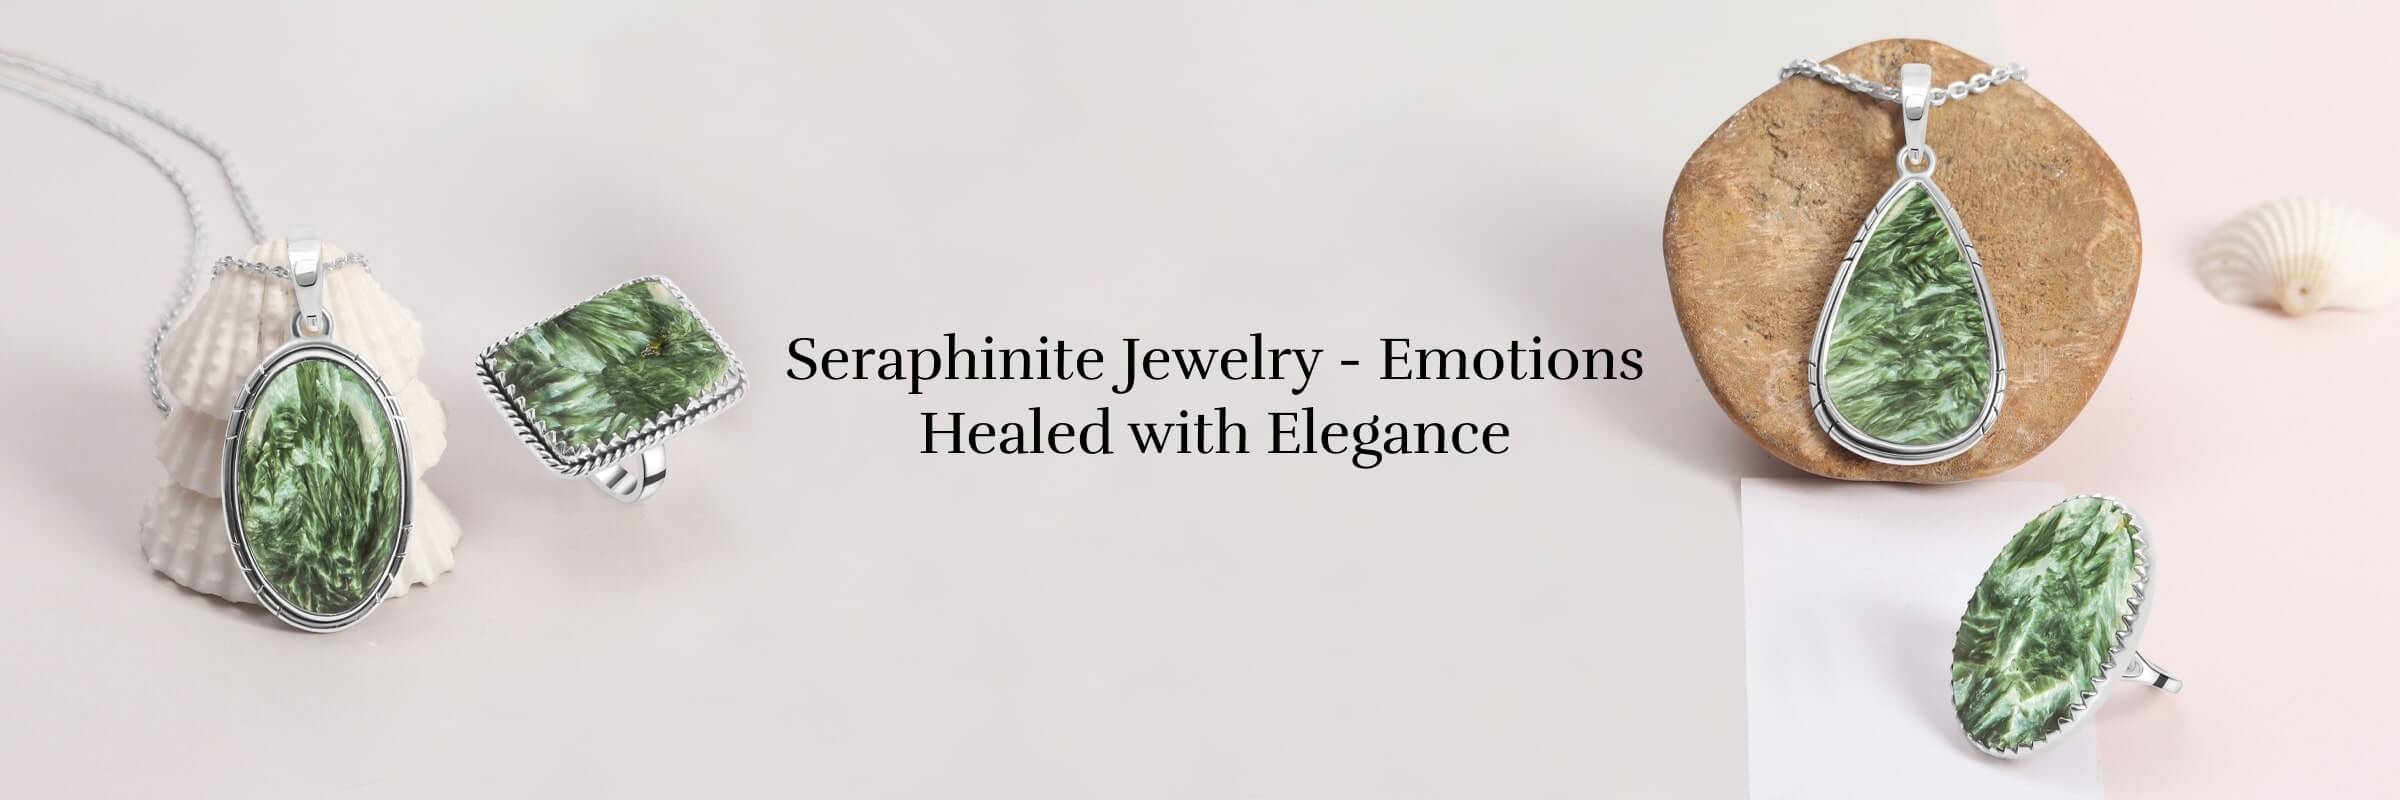 Seraphinite Jewelry Emotional Healing Properties